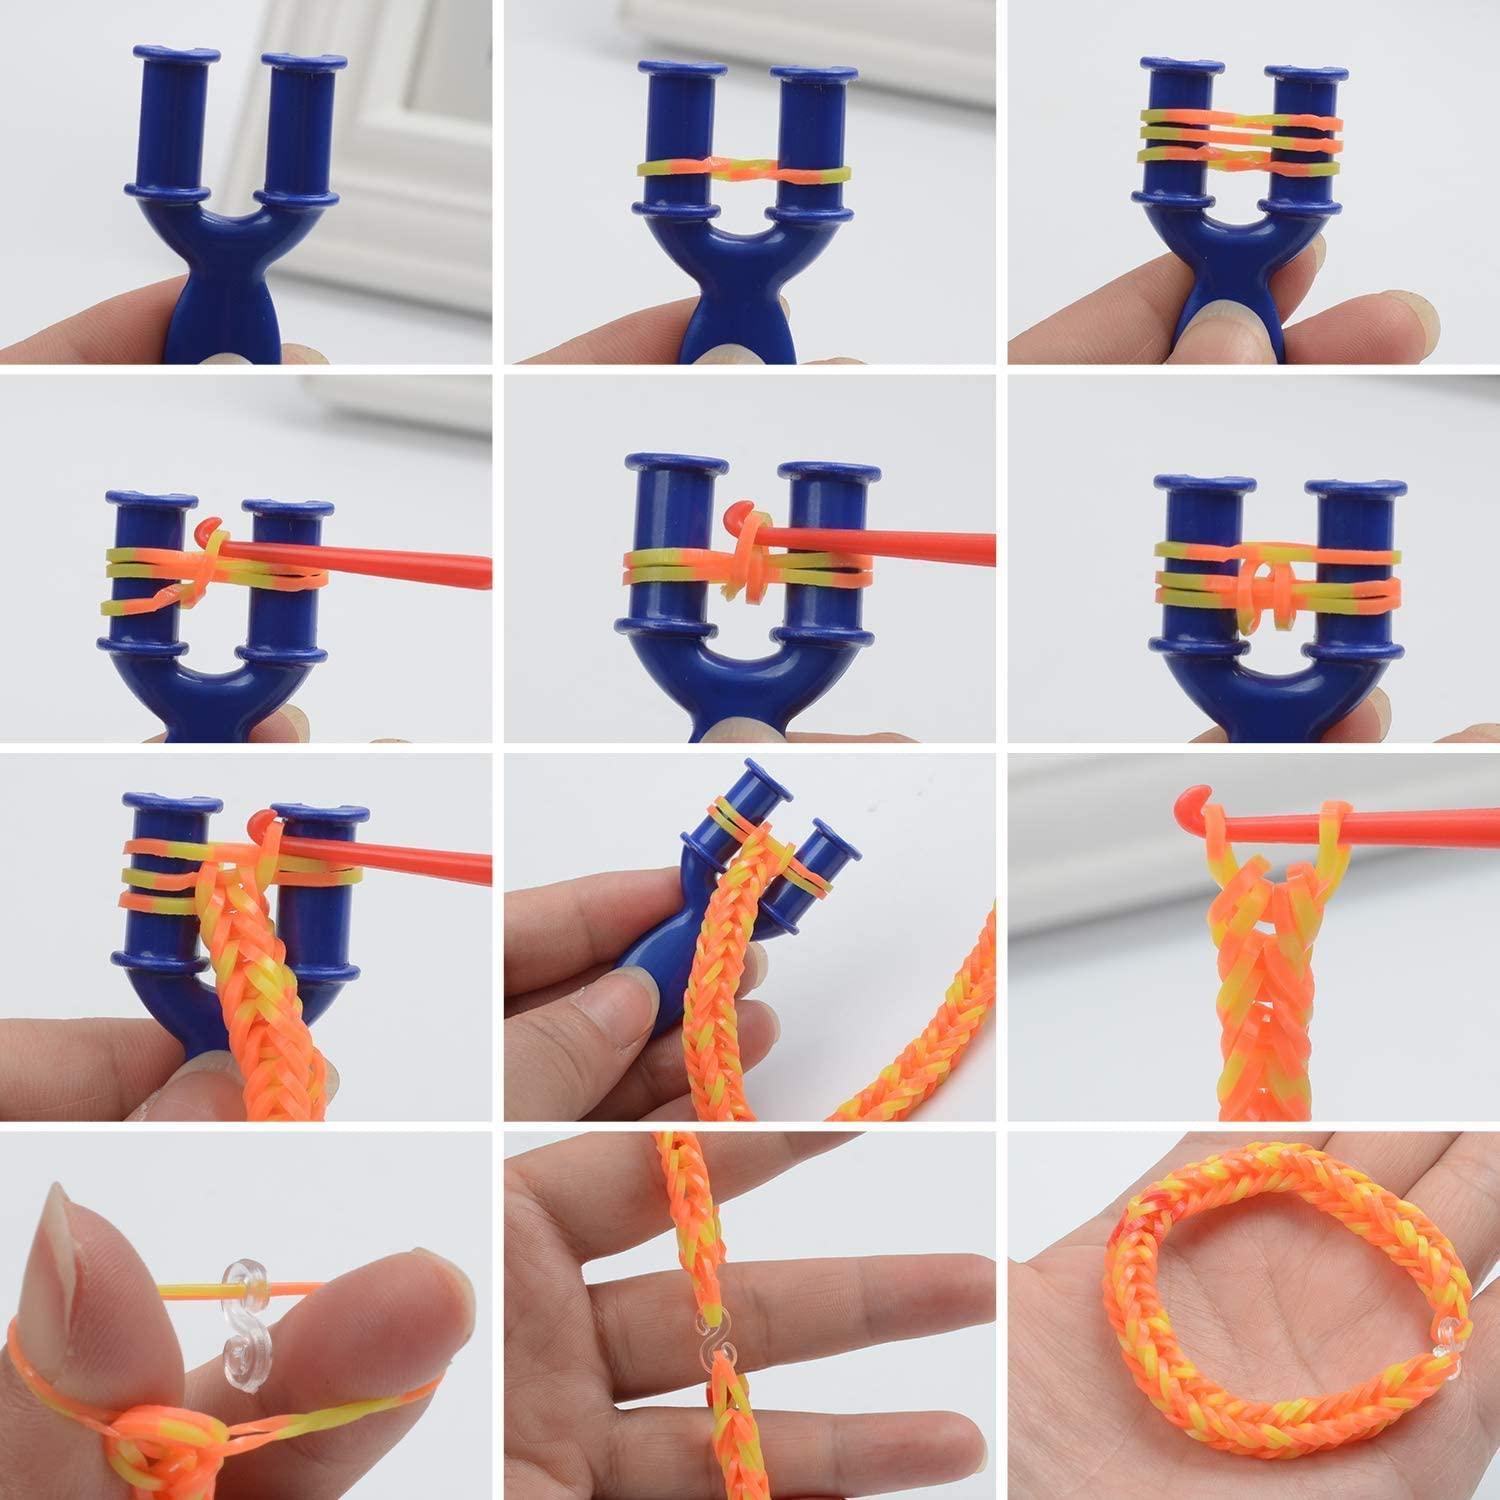 11000+Rubber Band Bracelet Kit, Loom Bracelet Making Kit for Kids